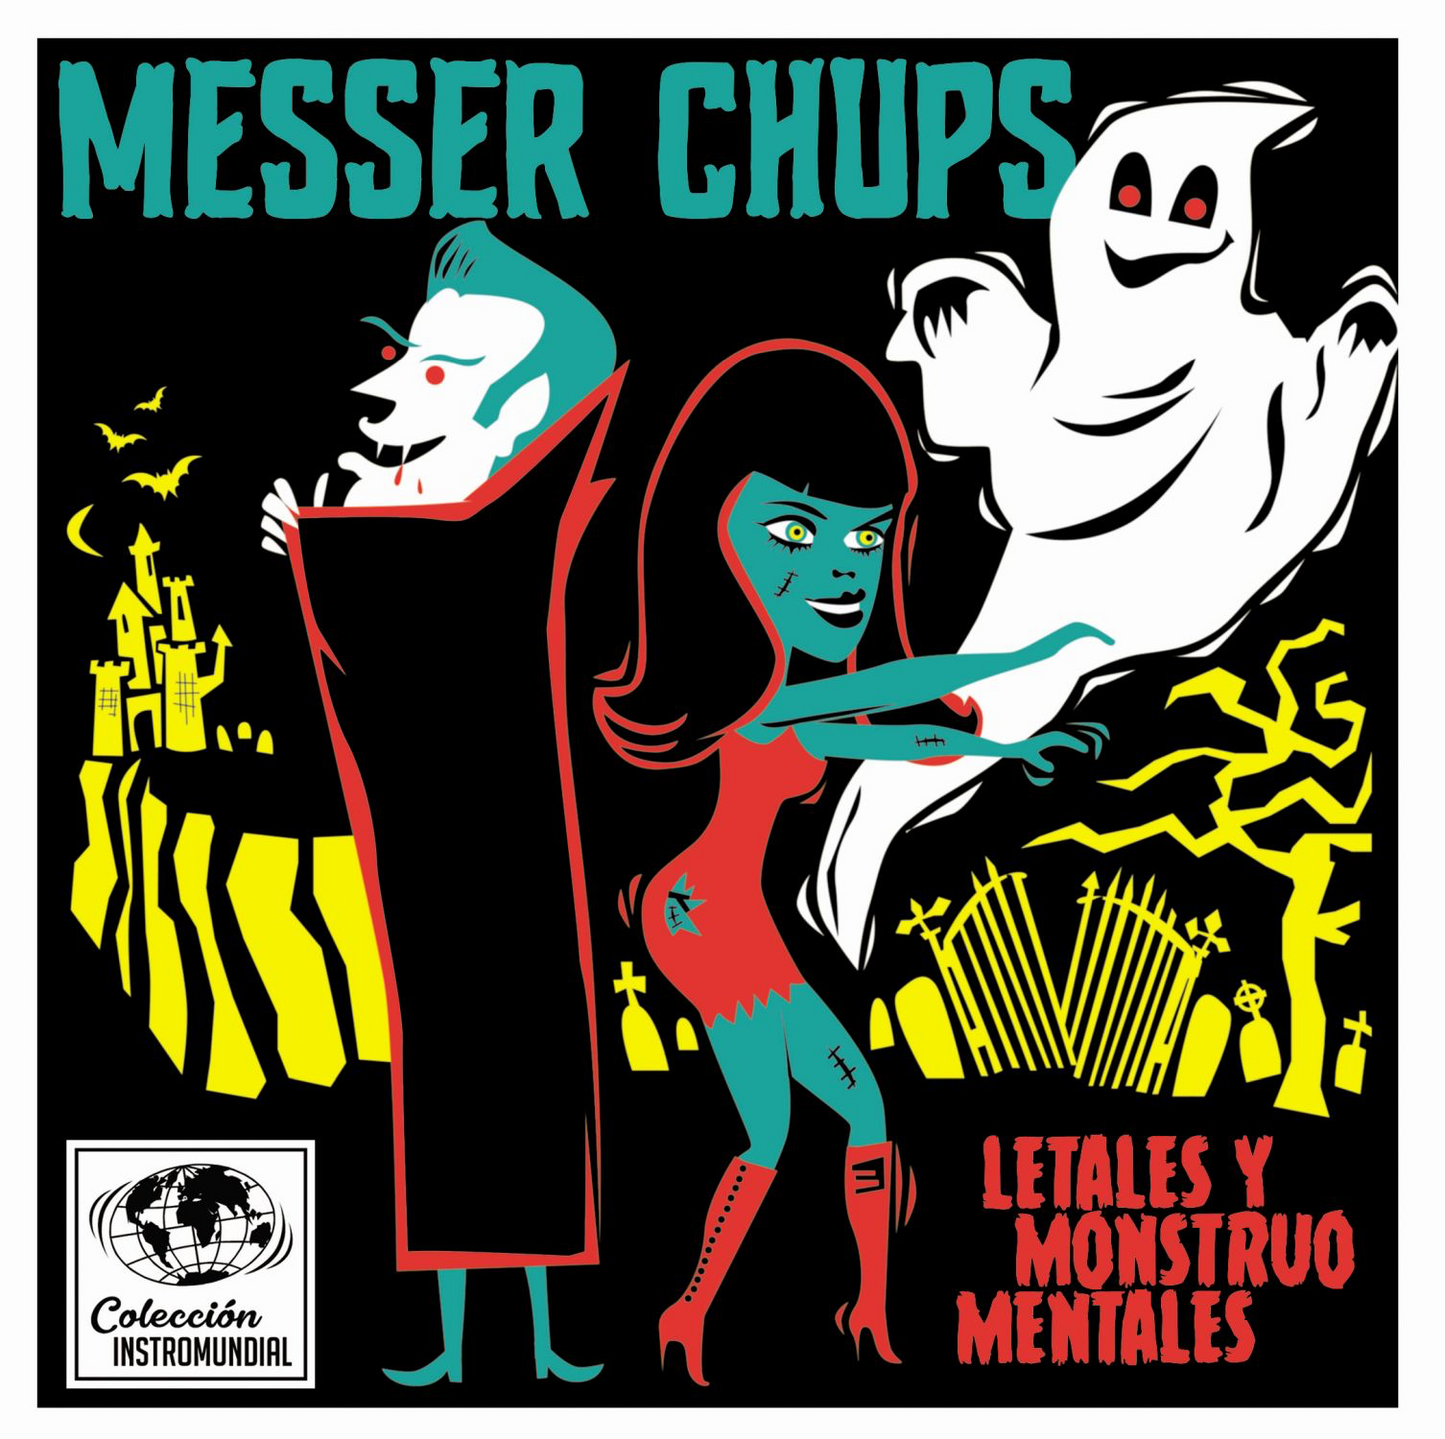 Messer Chups “Letales y Monstruo Mentales” EP